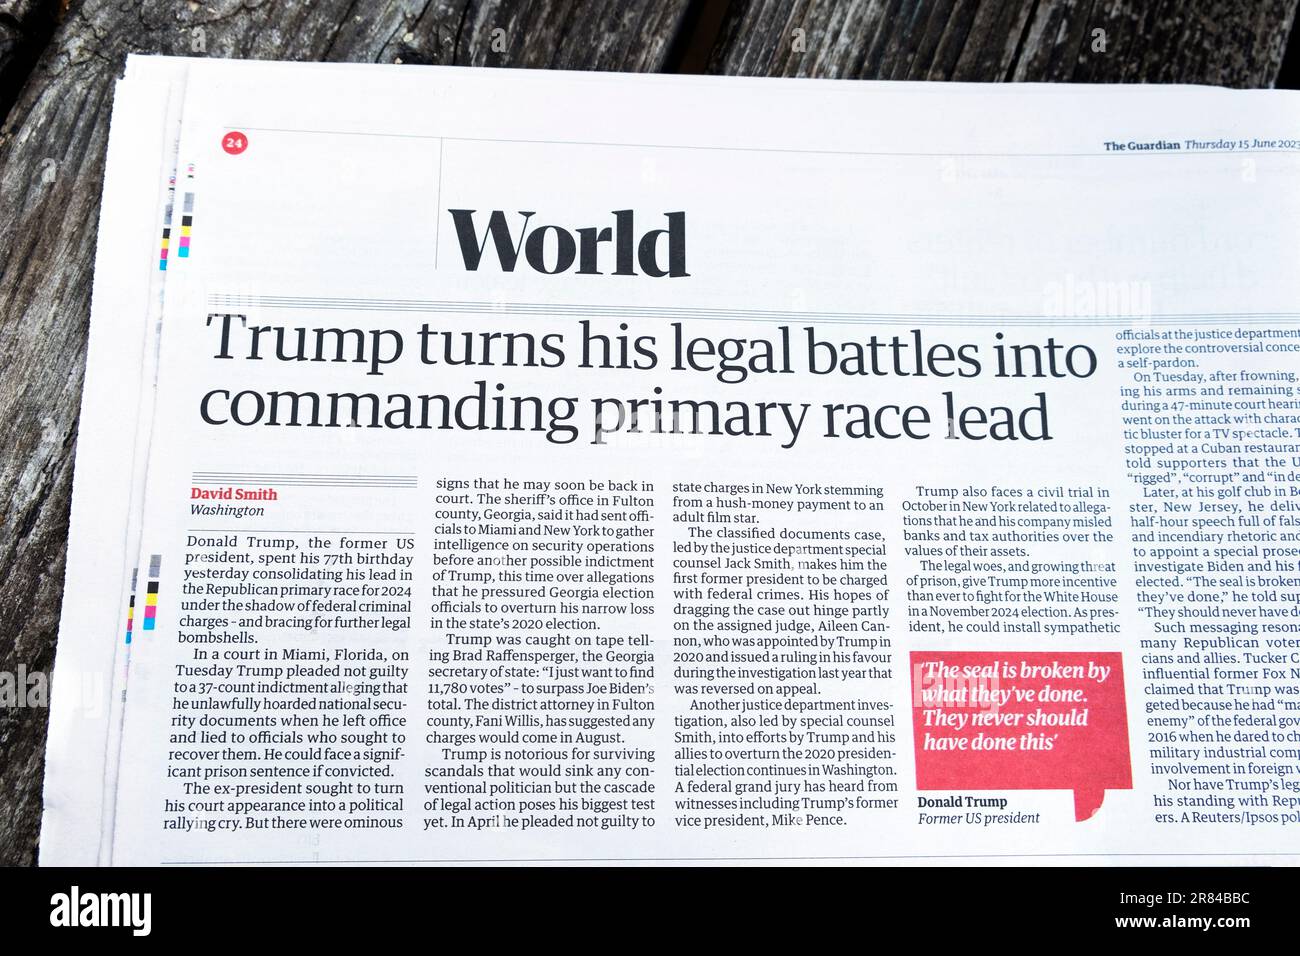 Donald 'Trump transforme ses batailles juridiques en commandant le premier chef de course' le journal Guardian titre de l'article électoral américain 15 juin 2023 Londres Royaume-Uni Banque D'Images